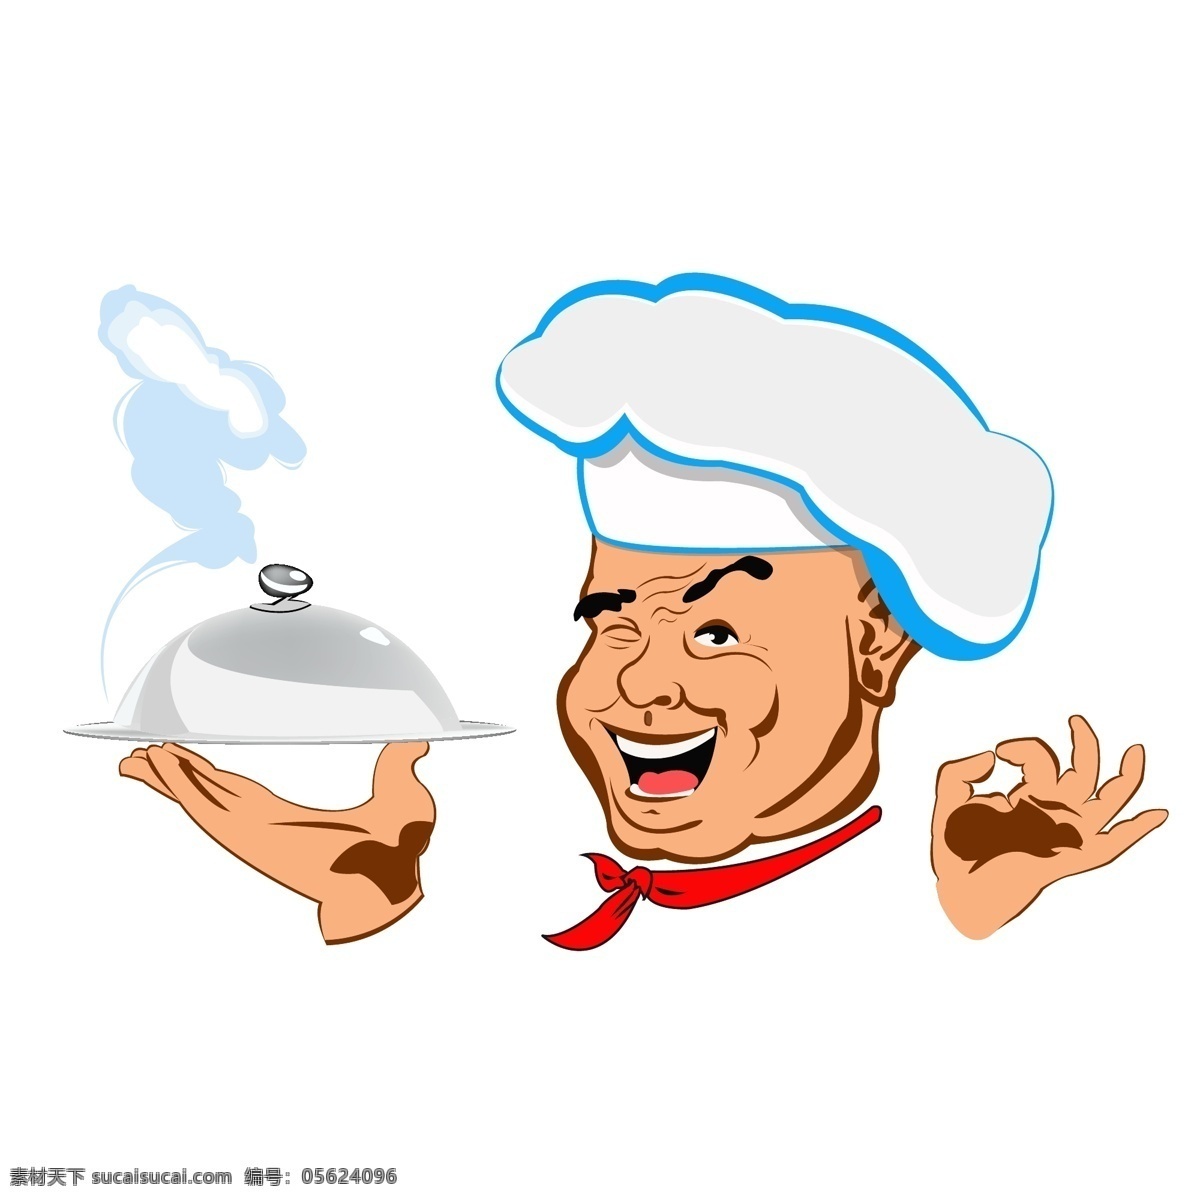 卡通 厨师 拿着汉堡 卡通素材 厨子 汉堡 笑脸 面点师 卡通人物 可爱卡通 ok手势 吃货 吃面条 分层 人物